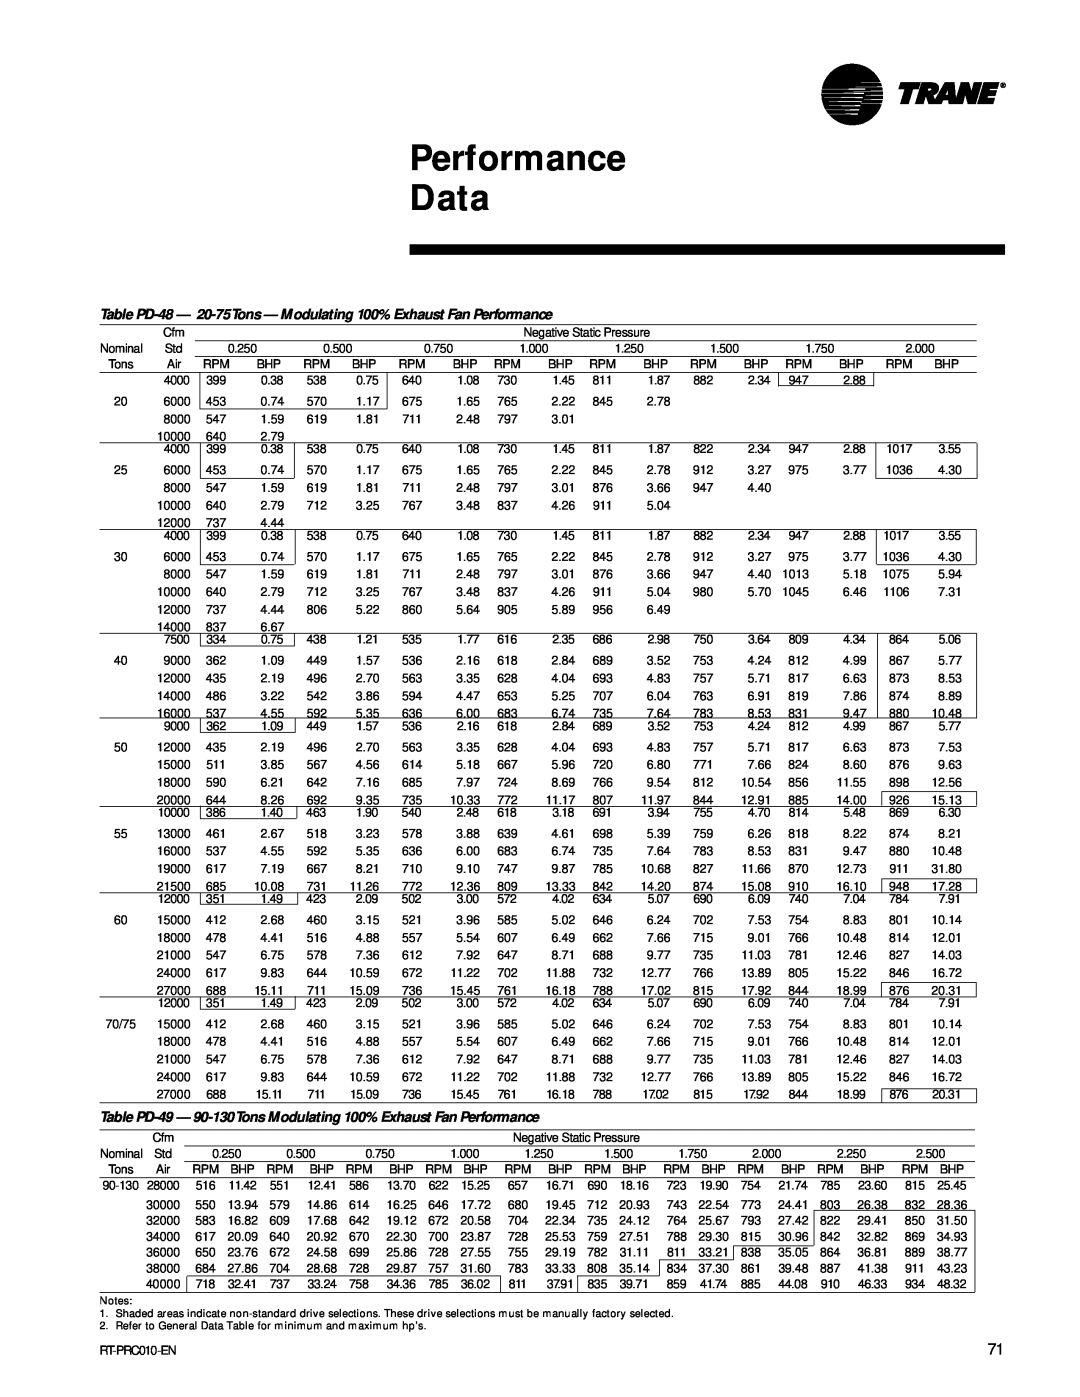 Trane RT-PRC010-EN manual Performance Data, 27000 